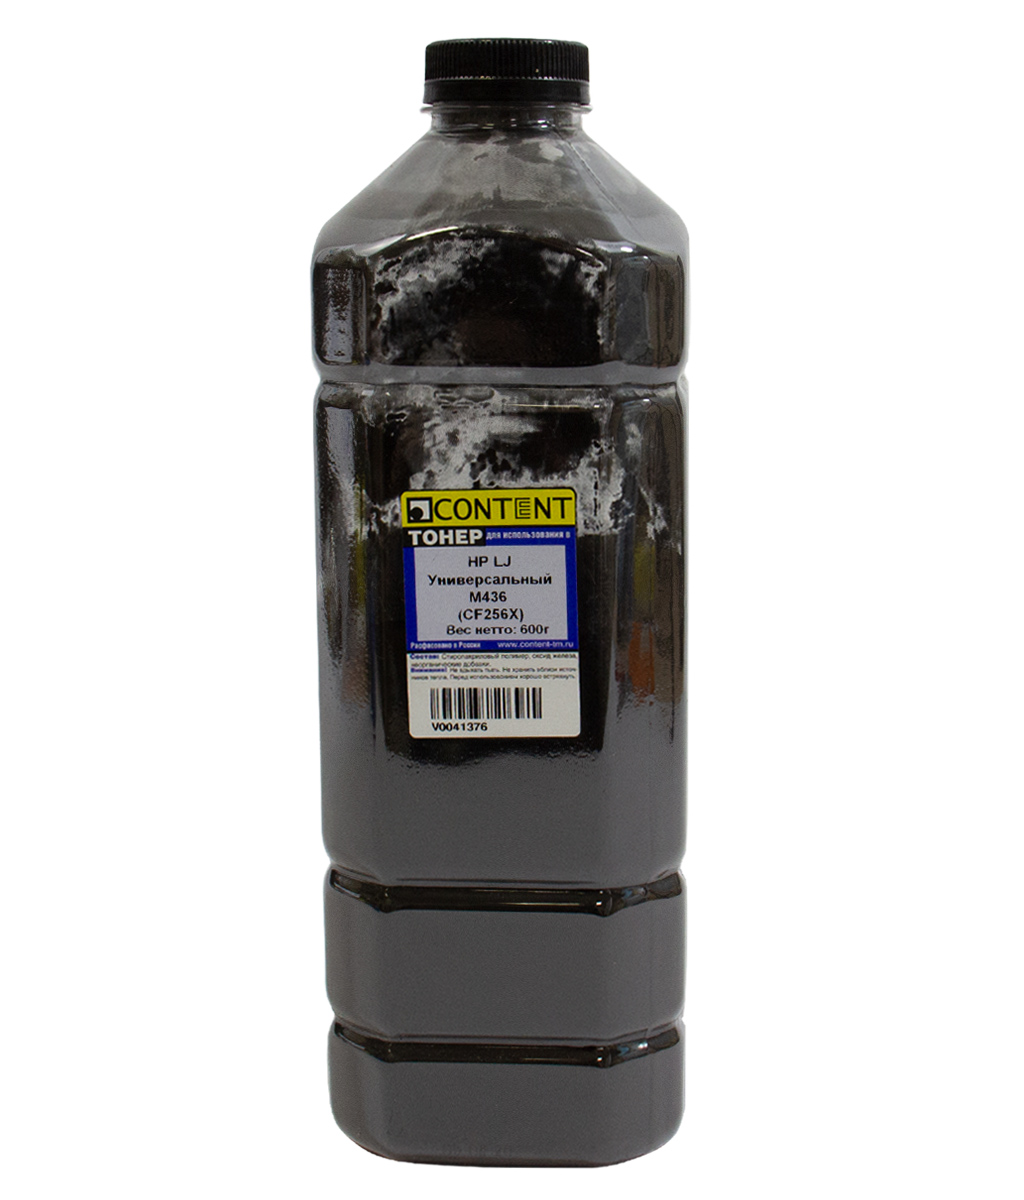 Тонер Content, бутыль 600 г, черный, совместимый для HP LJ M436, универсальный (V0041376)